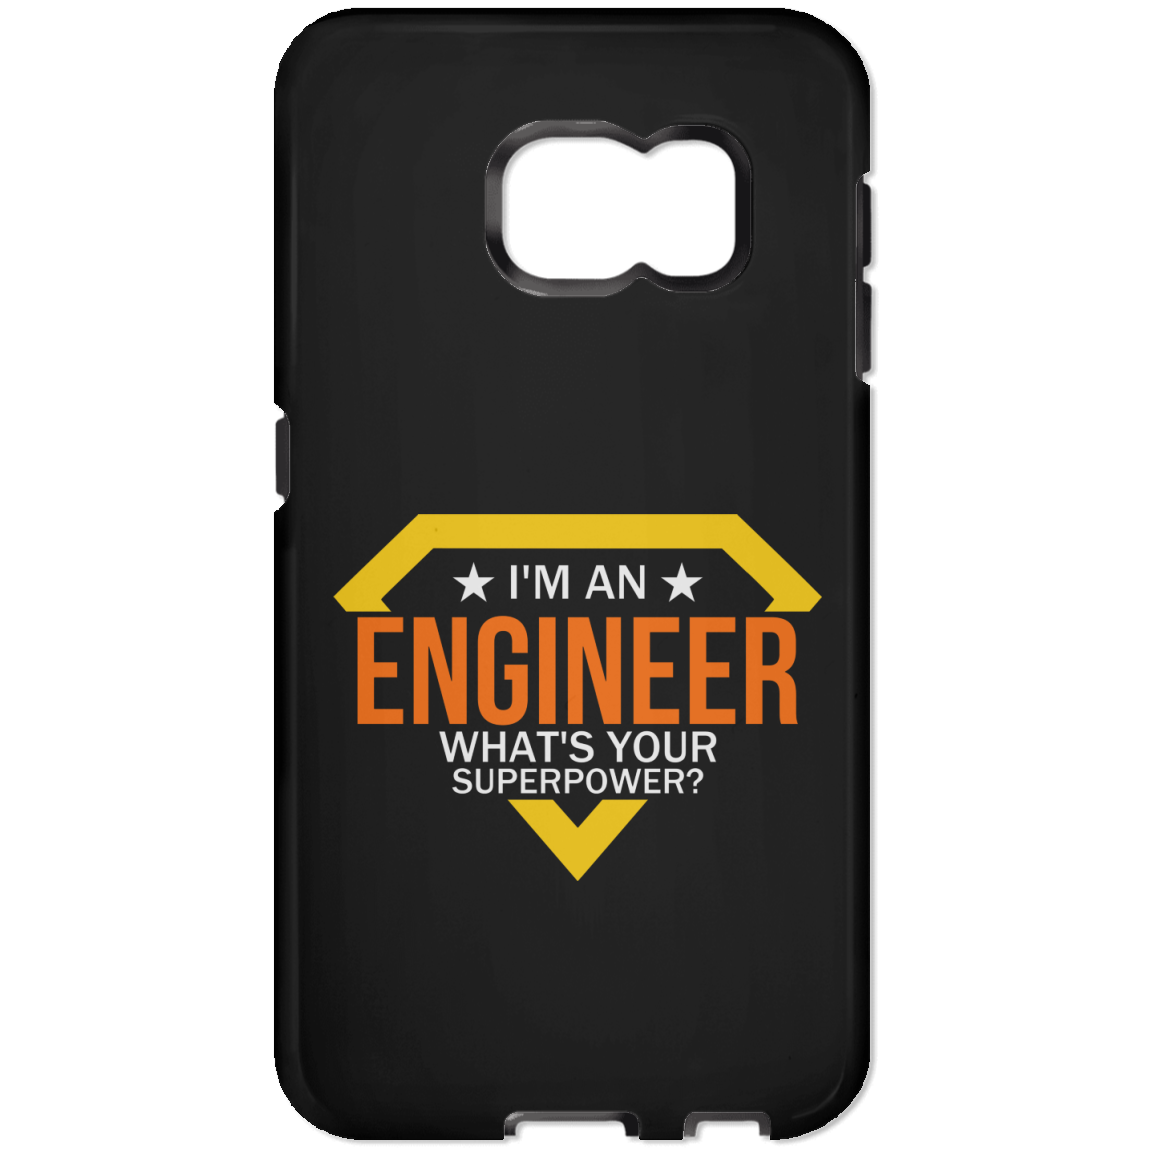 Soy ingeniero: ¿cuál es tu superpoder? (Carcasa de telefono)